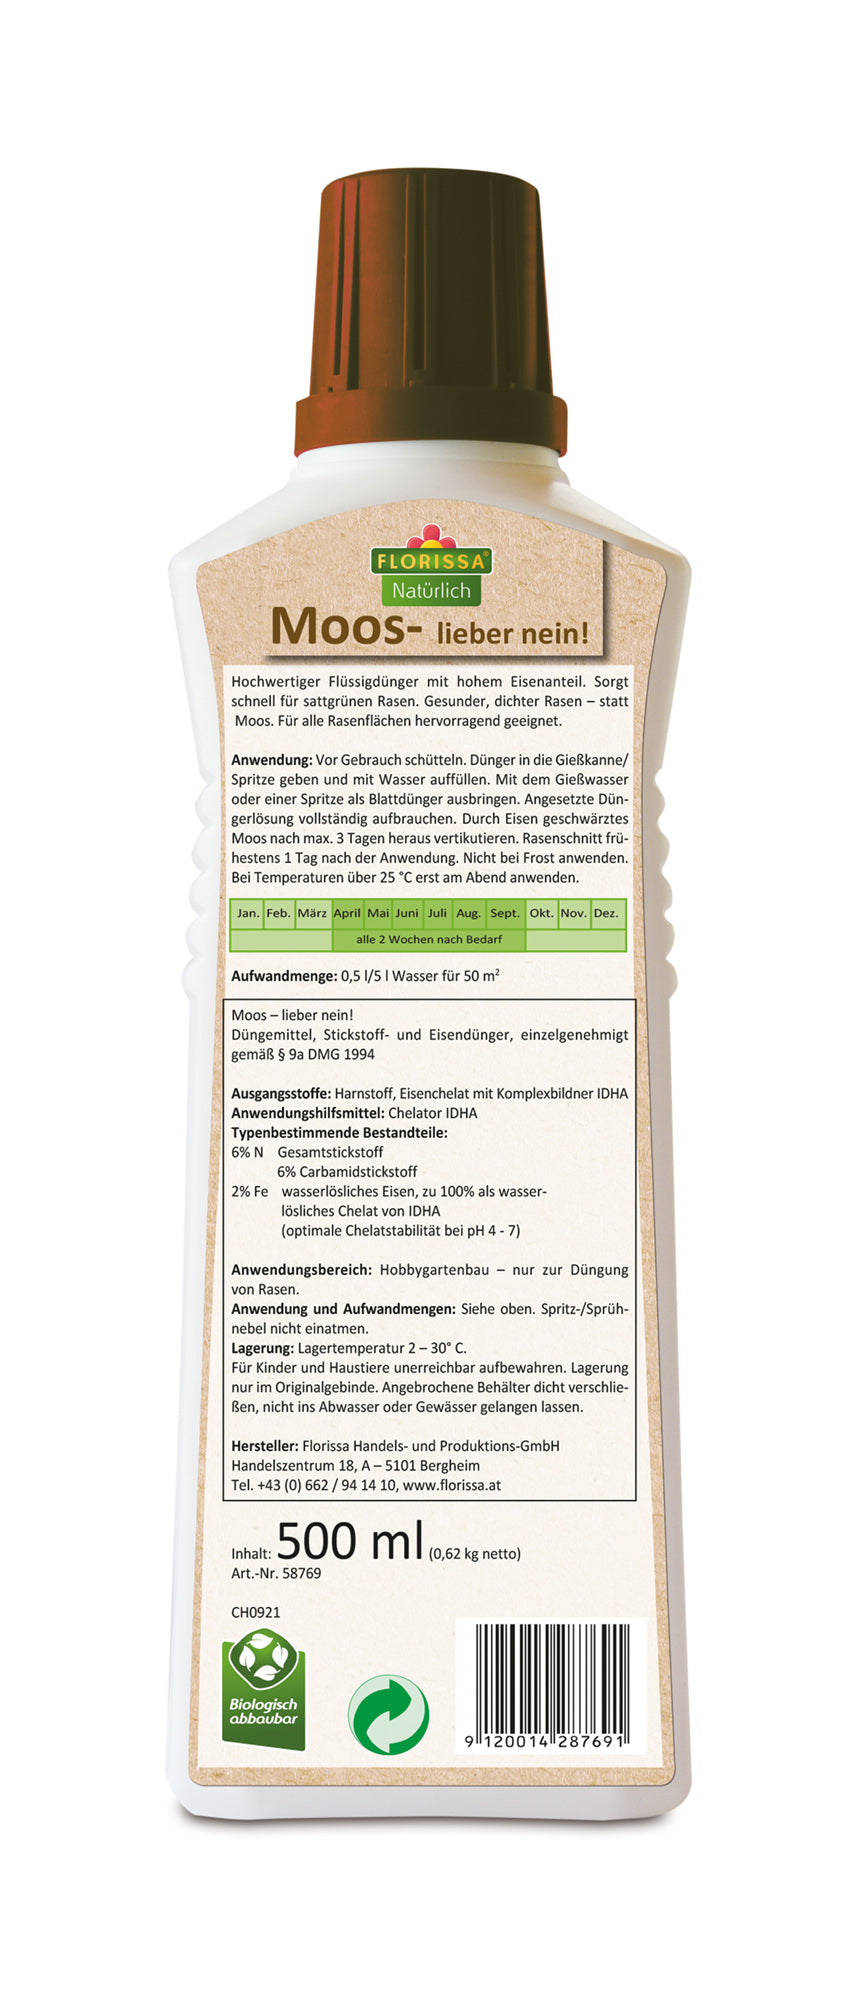 Moos - lieber nein! (500 ml) | Unkraut, Moos & Algen von Florissa